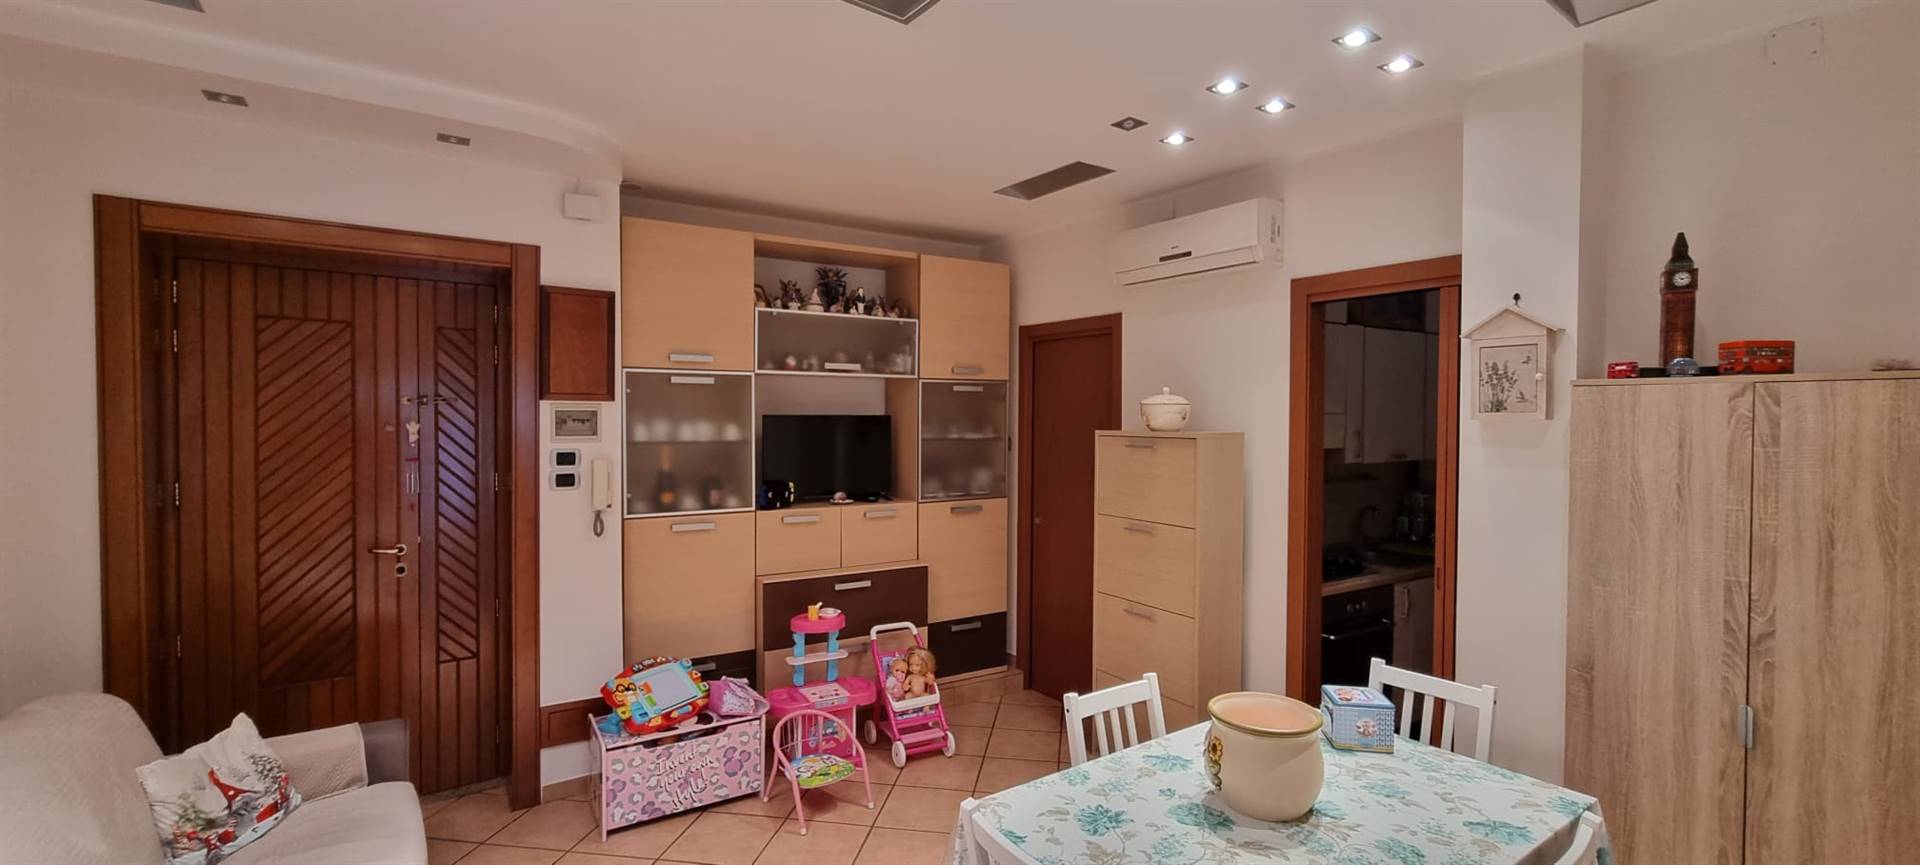 Appartamento in vendita a Martina Franca, 3 locali, prezzo € 110.000 | PortaleAgenzieImmobiliari.it